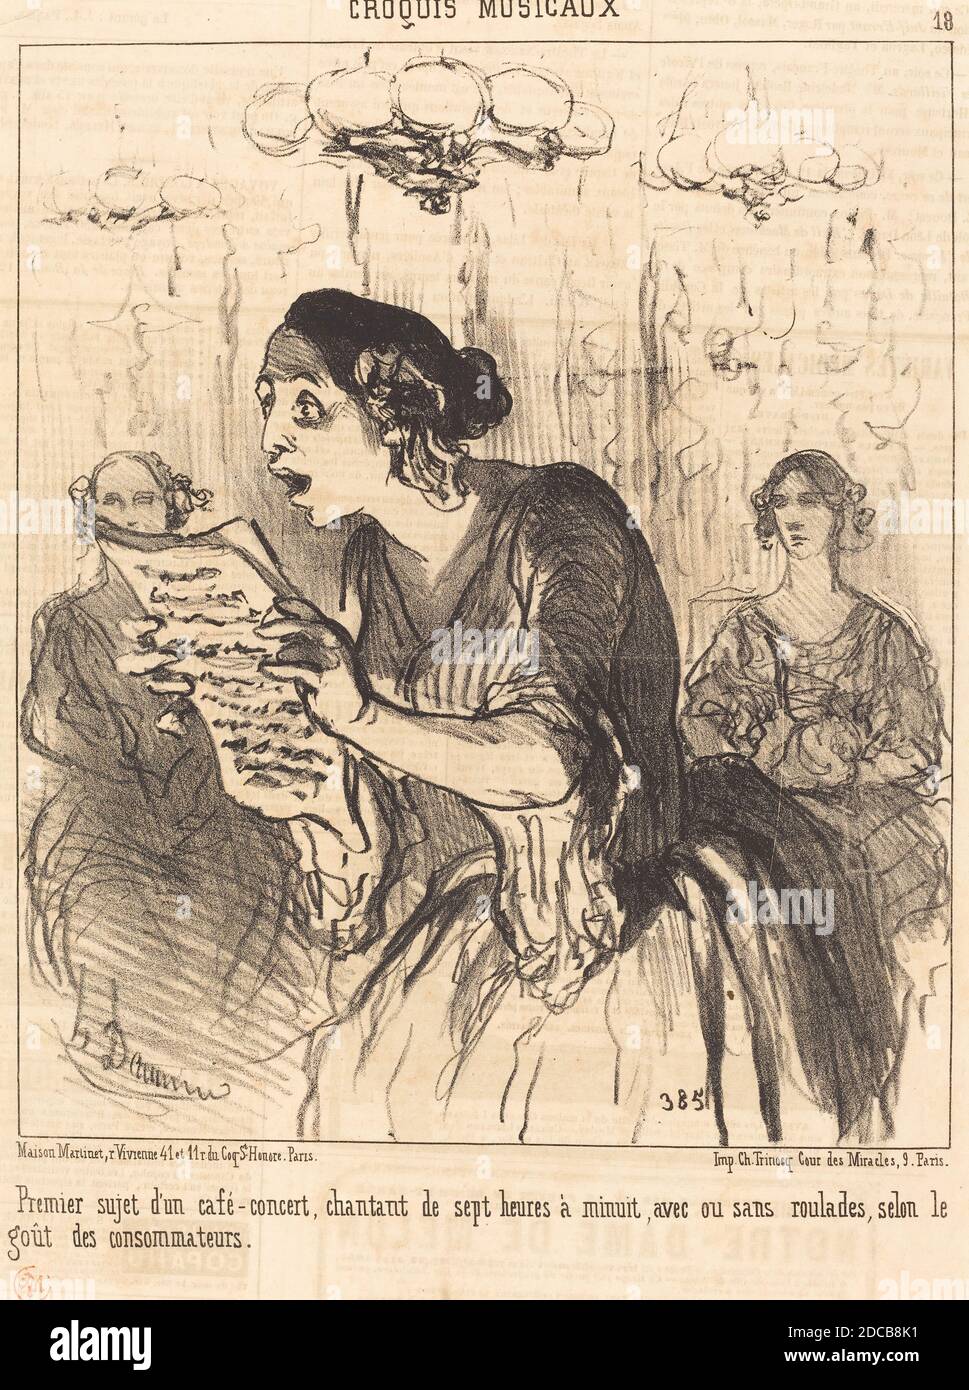 Honoré Daumier, (artist), French, 1808 - 1879, Premier sujet d'un café-concert chantant..., Croquis Musicaux: pl.18, (series), 1852, lithograph on newsprint Stock Photo